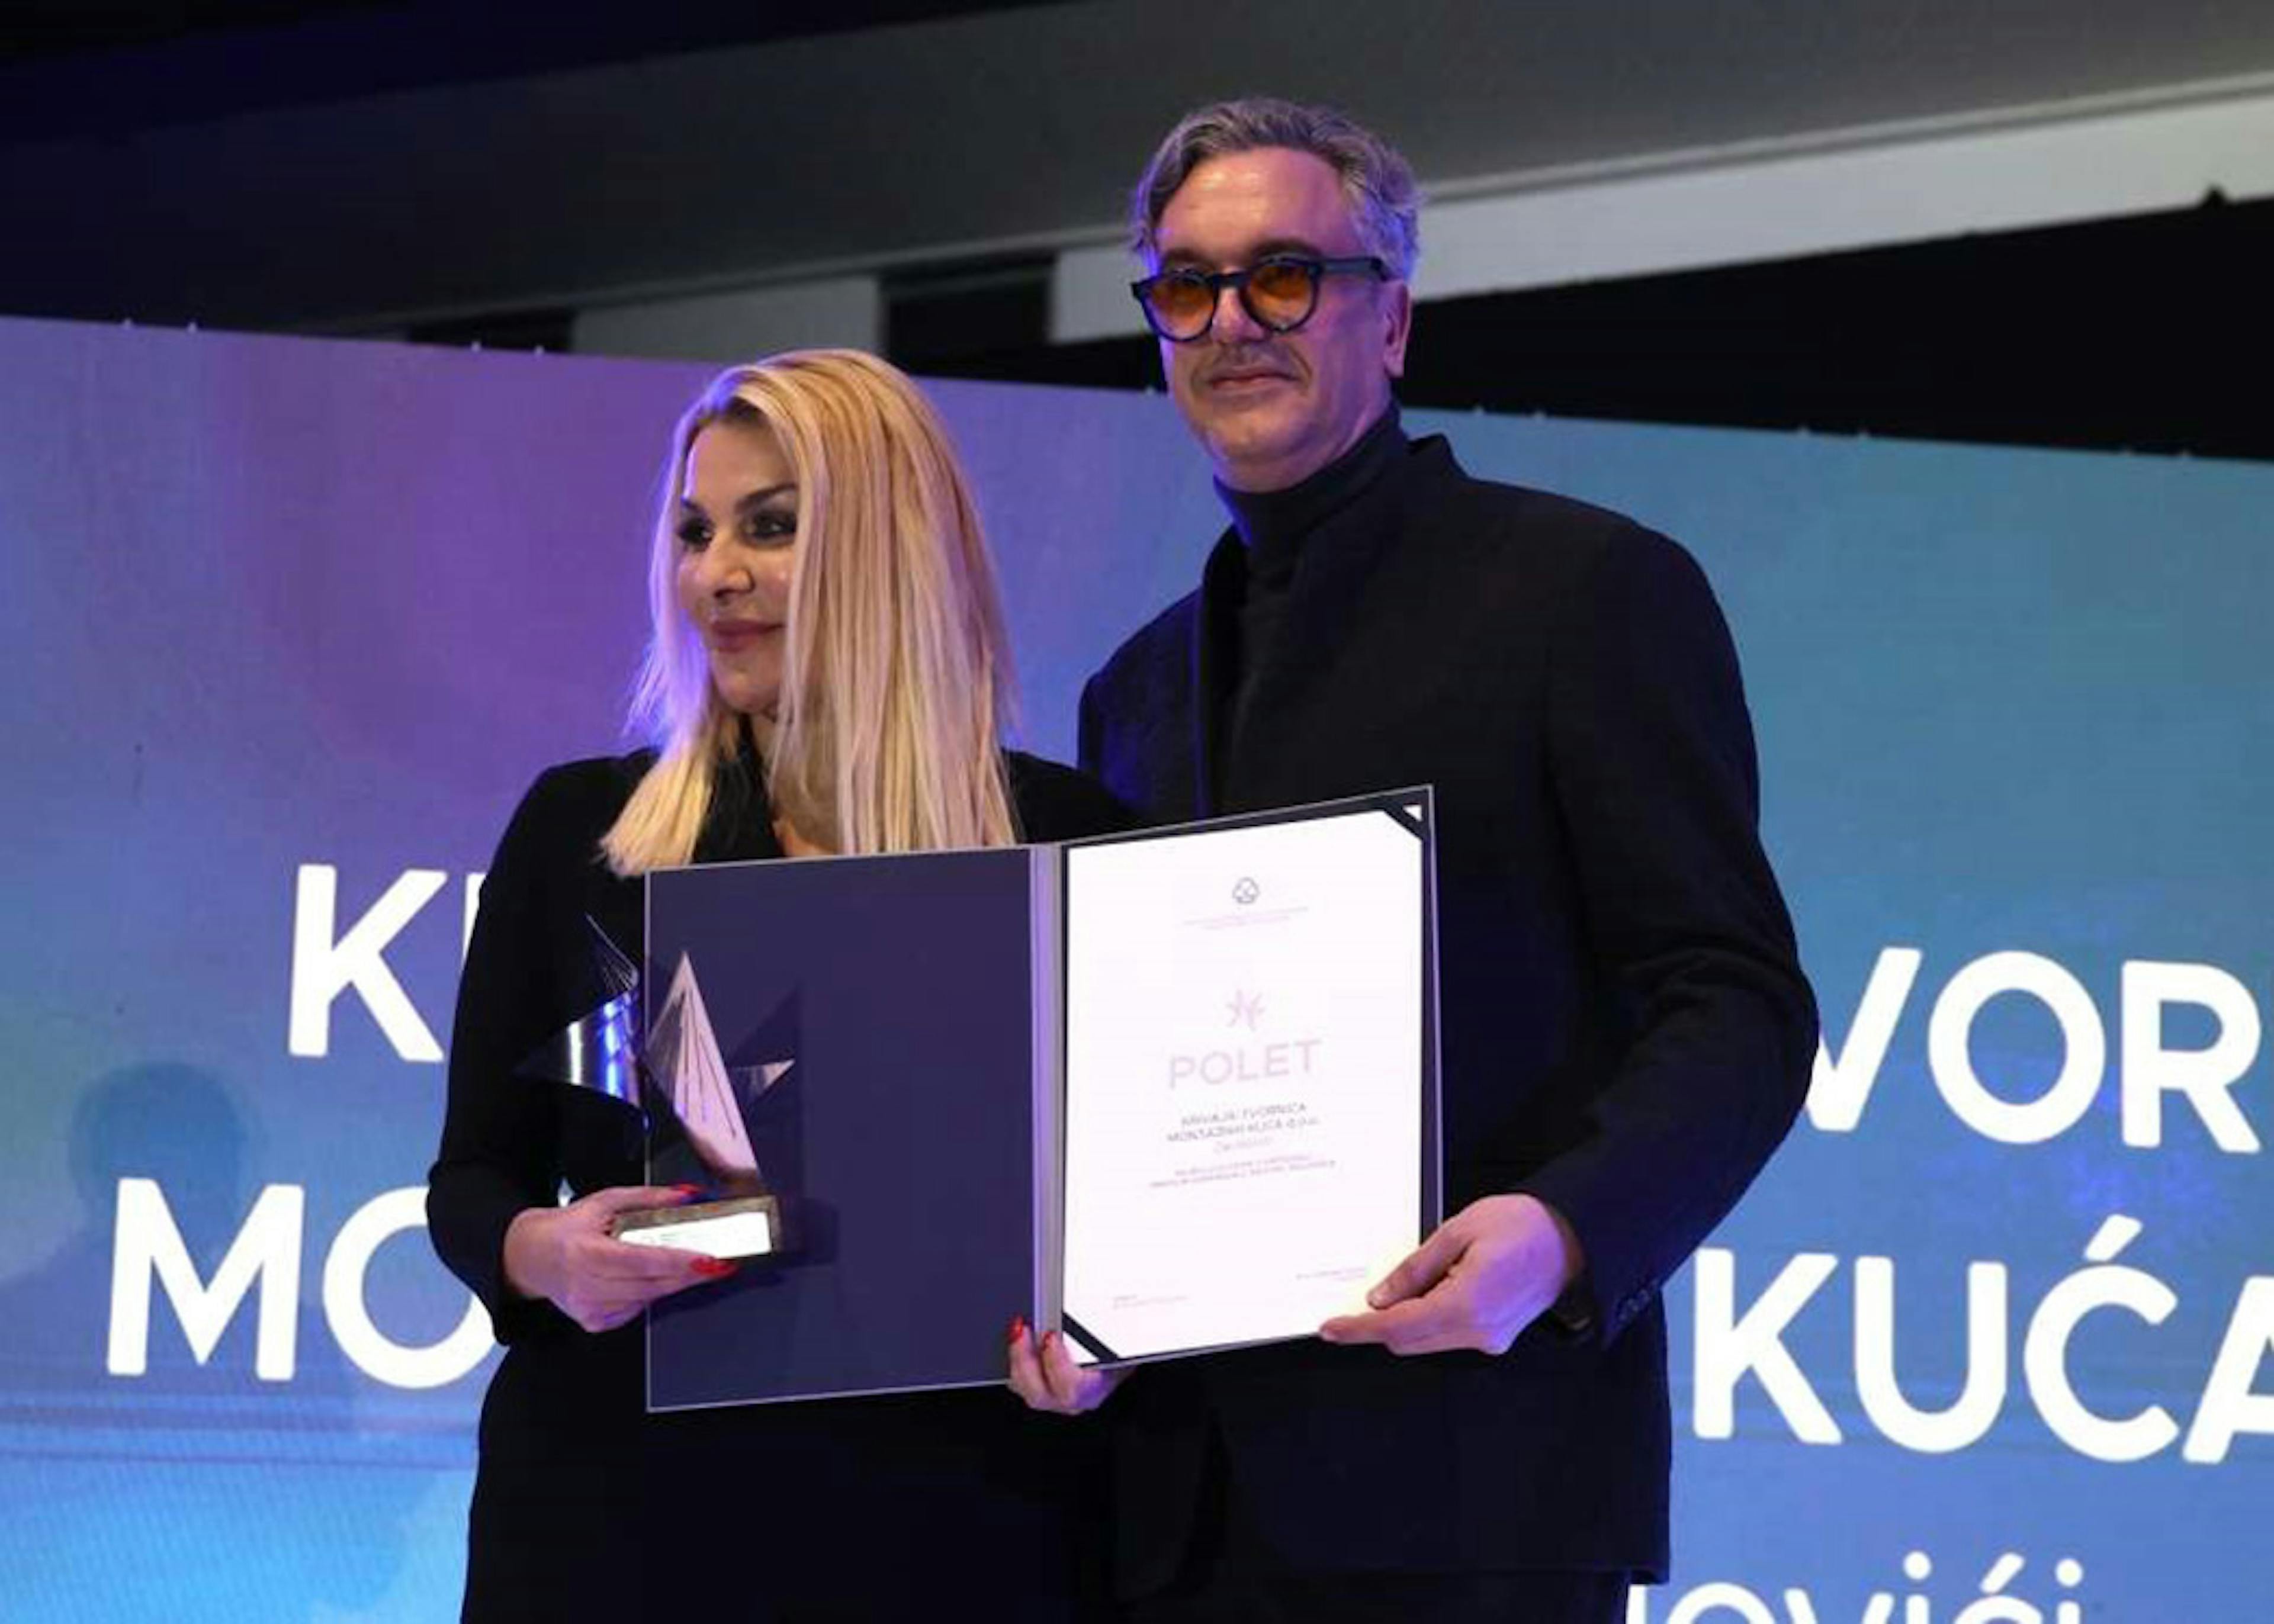 Krivaja - Polet award winner